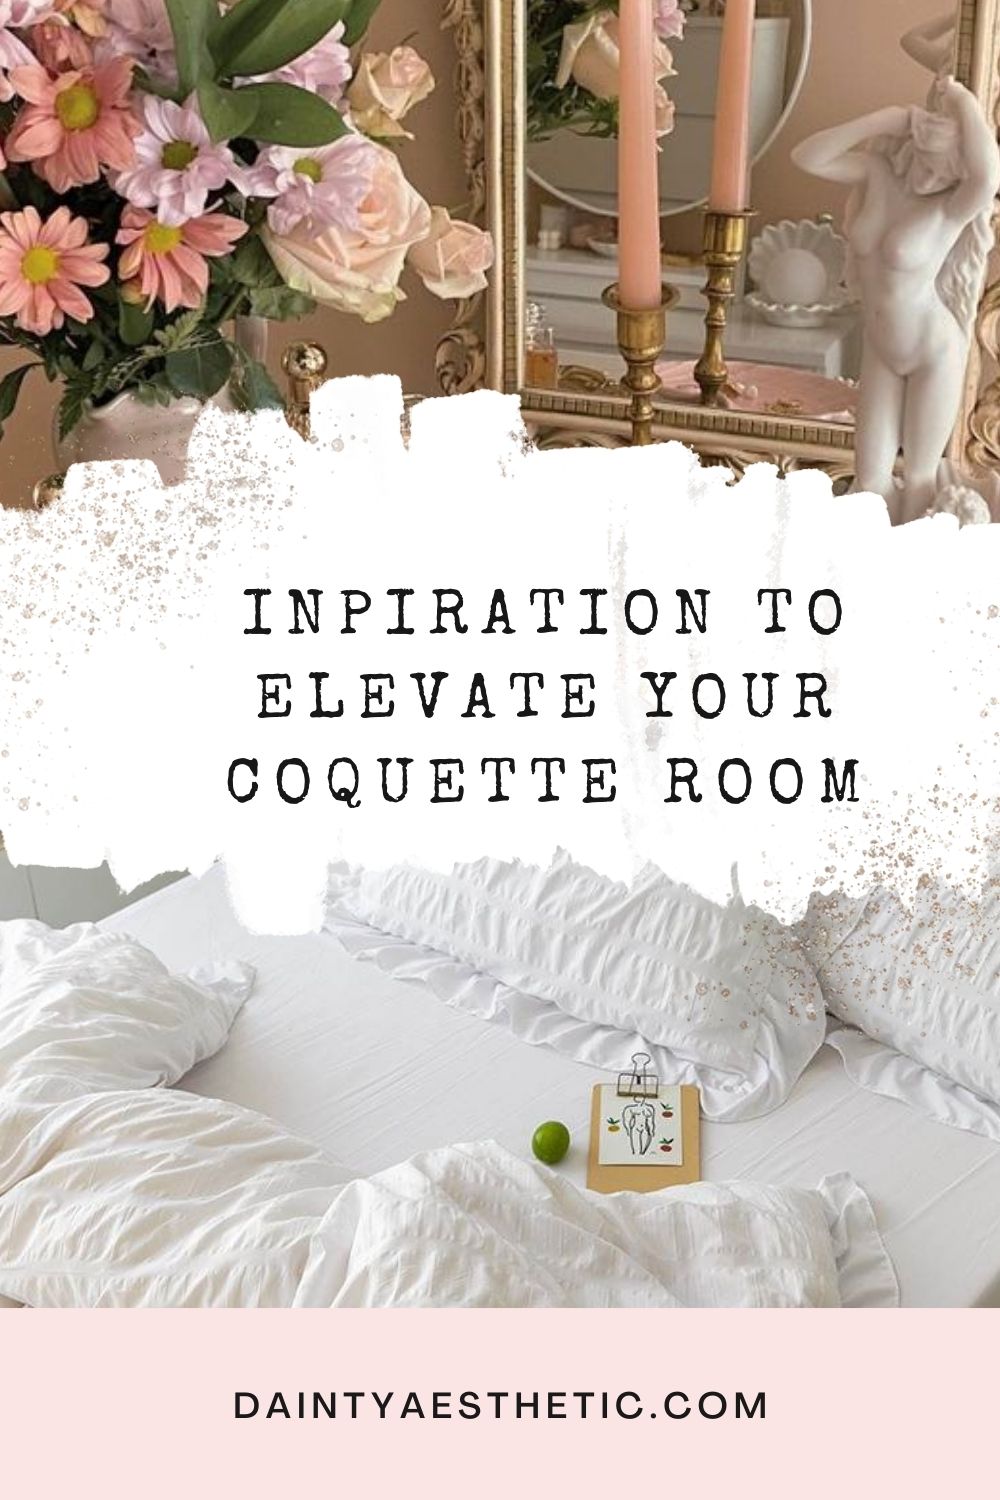 Coquette Room Decor, Coquette Decor, Coquette Bedroom, Coquette Room  Aesthetic, Coquette Room Ideas